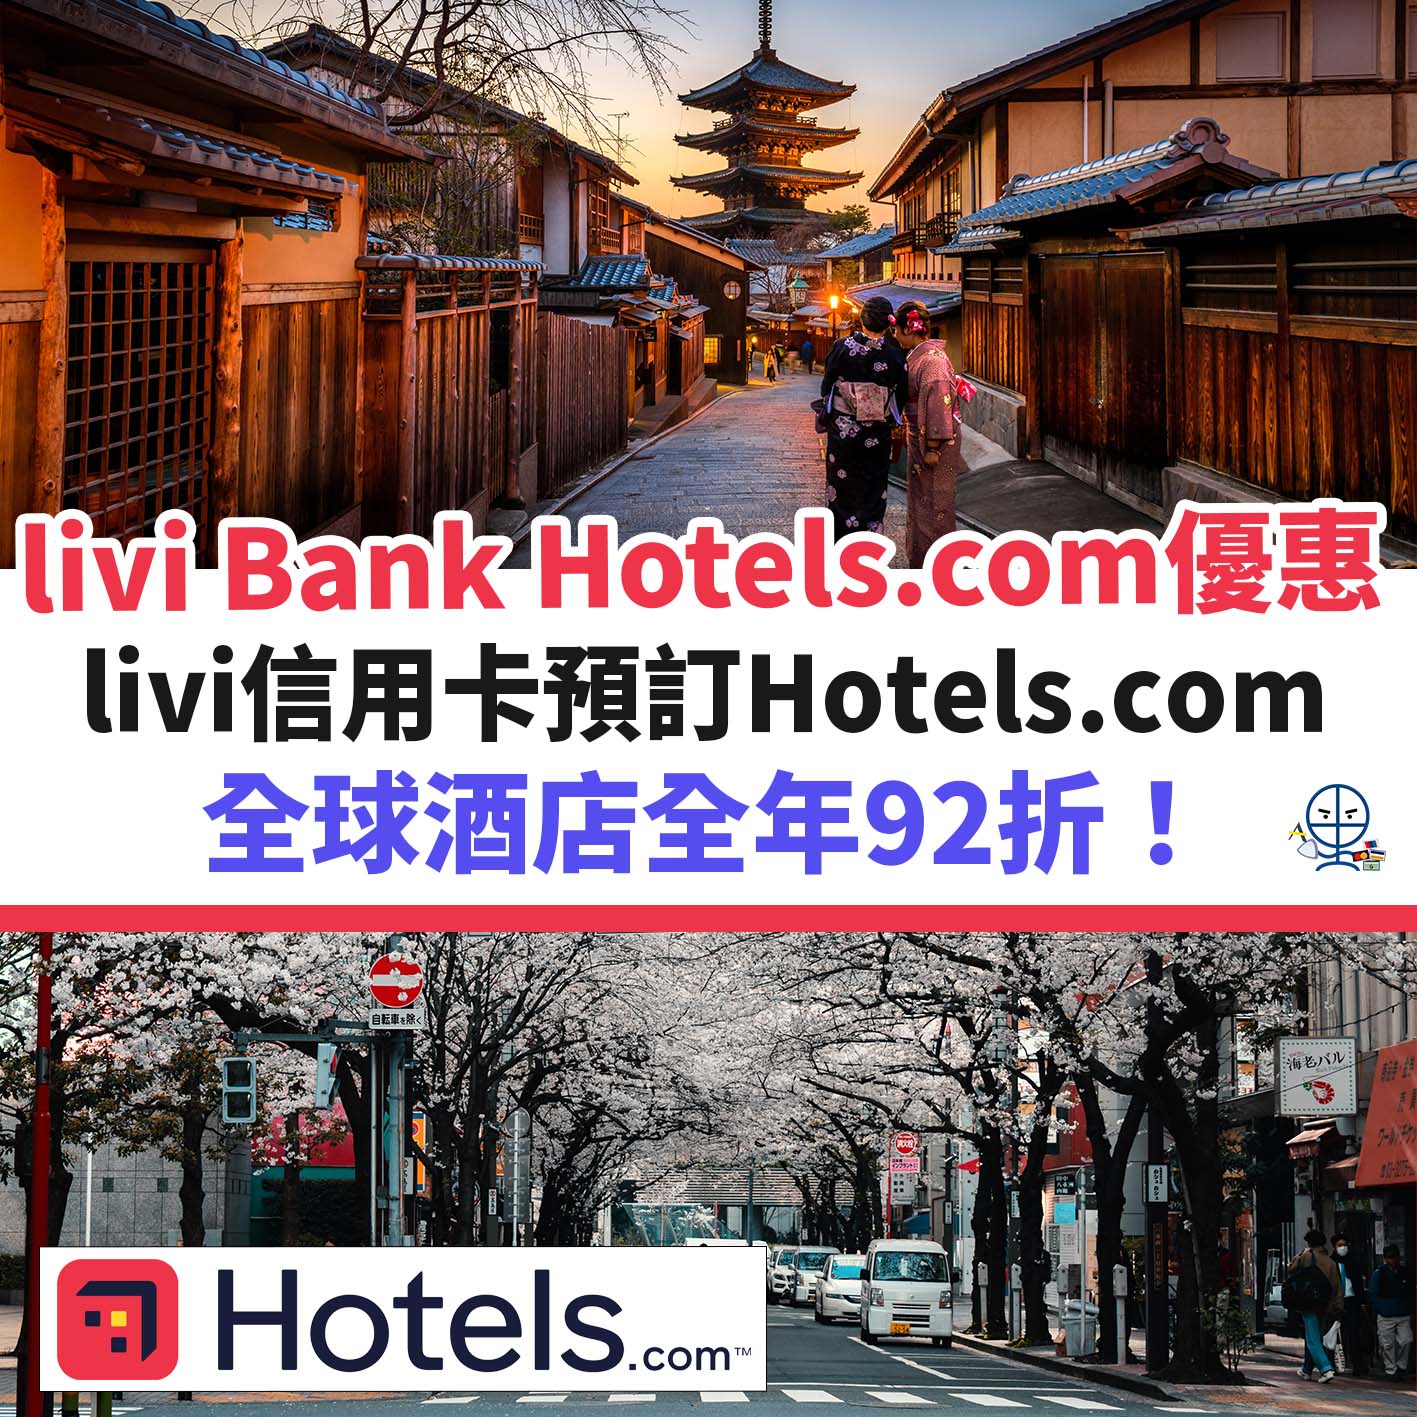 hotels-com-livi－bank－優惠－酒店－信用卡